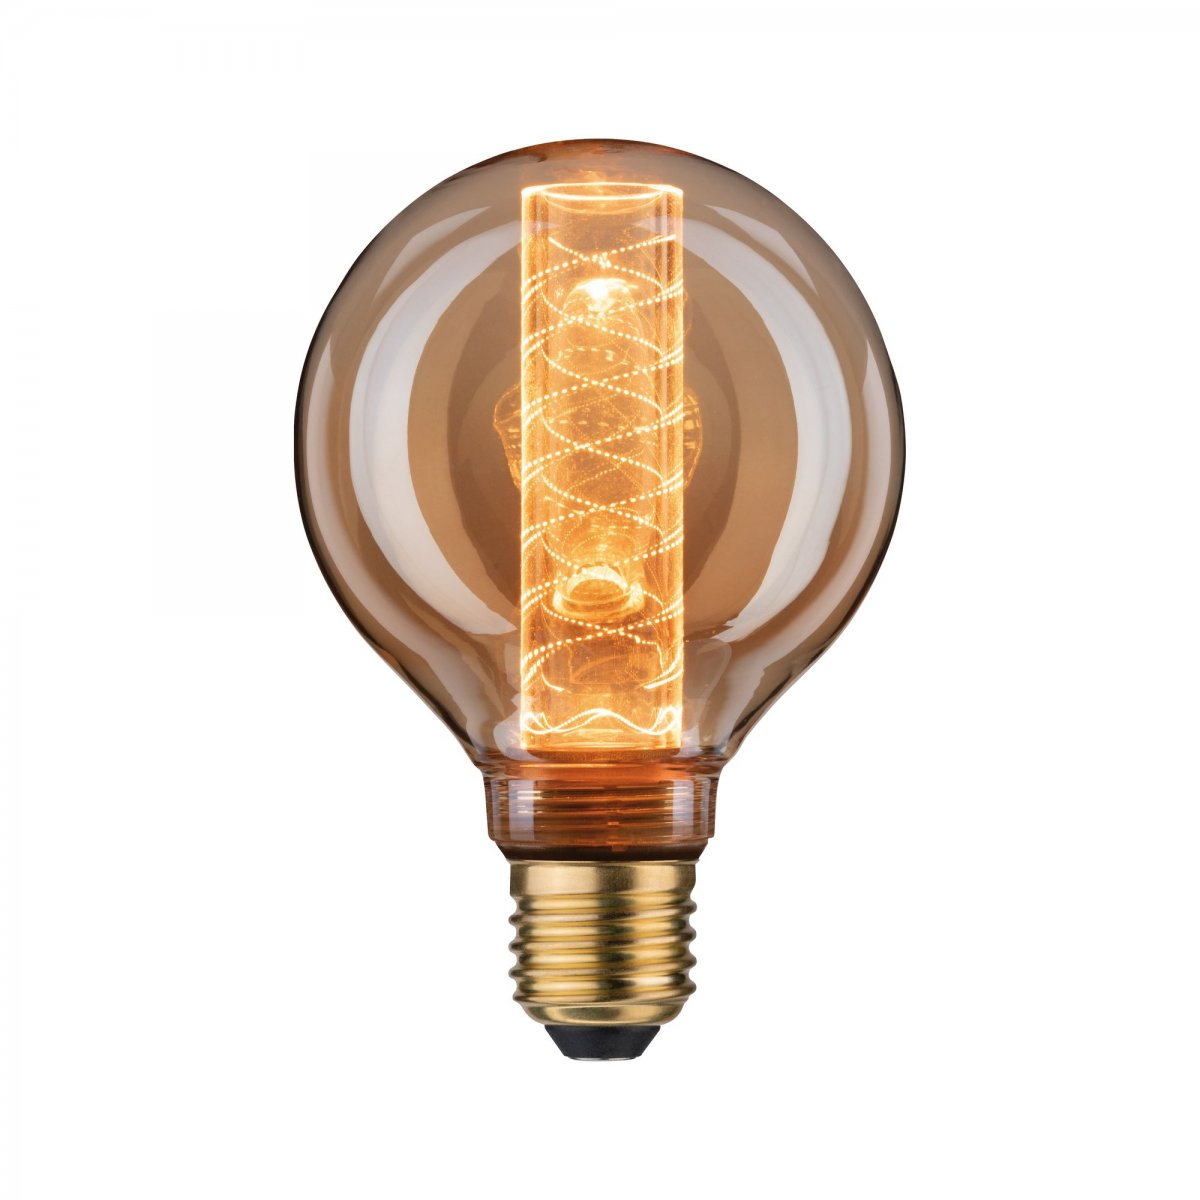 Goldlicht Watt E27 LED Inner lm PAULMANN Glow 4 200 LICHT spiral G95 Leuchtmittel